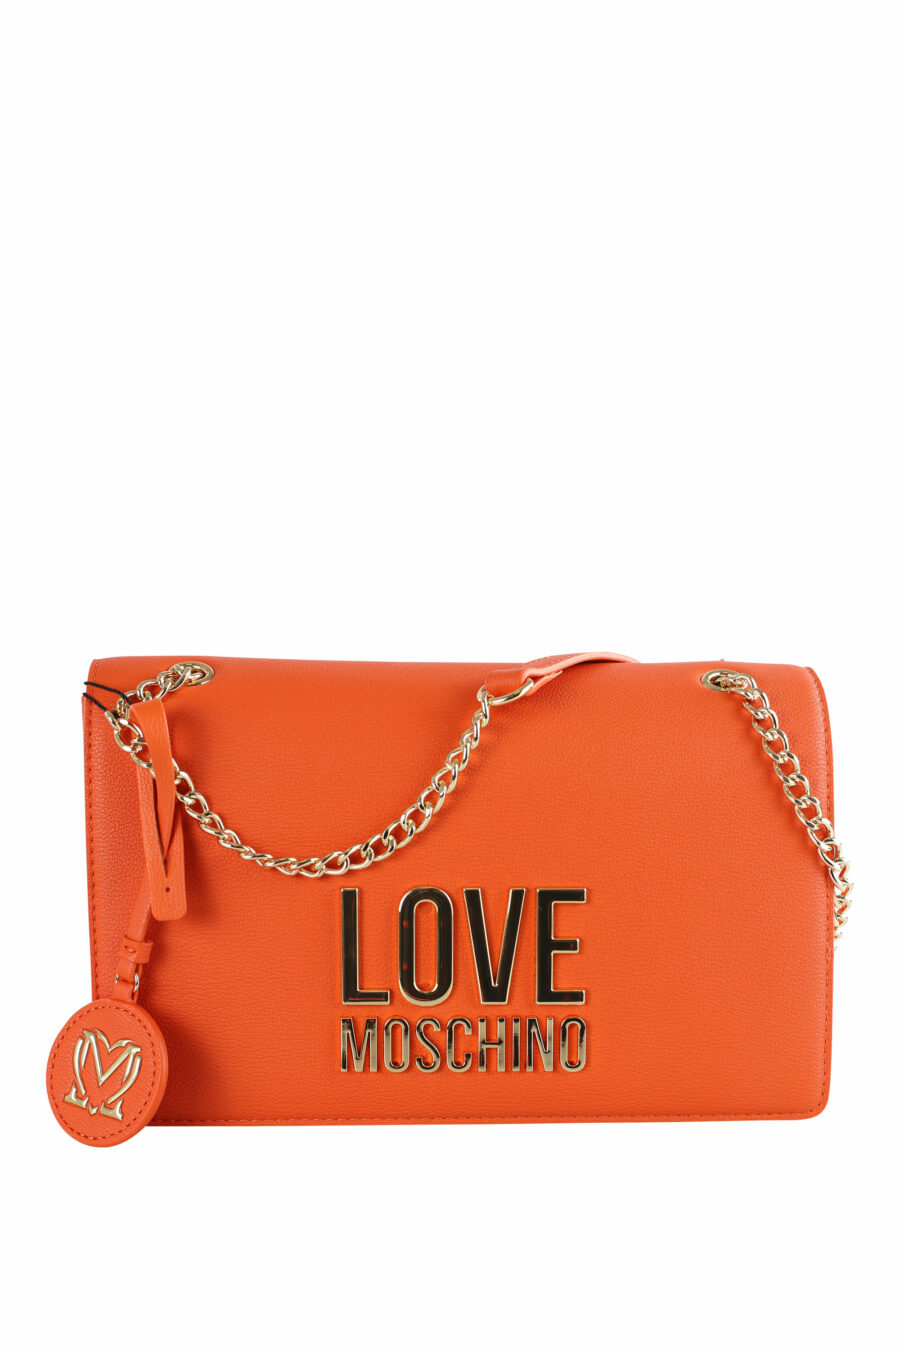 Bolso de hombro naranja con cadena y logo "lettering" - IMG 3654